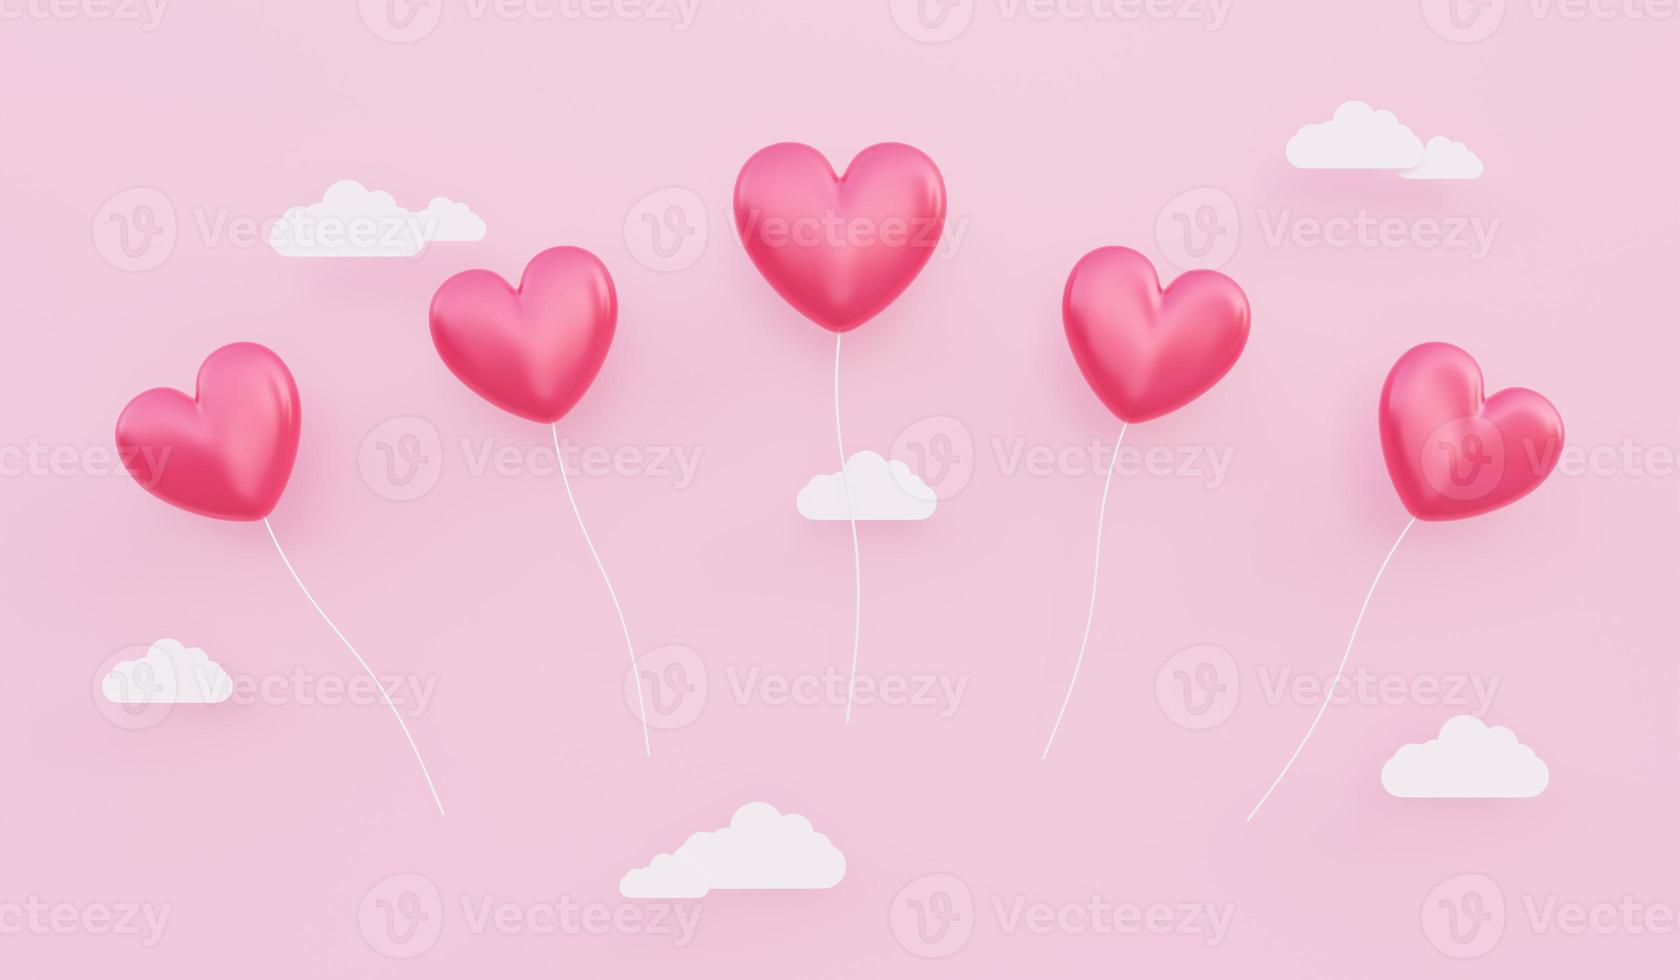 Saint Valentin, fond de concept d'amour, illustration 3d de ballons rouges en forme de coeur flottant dans le ciel photo